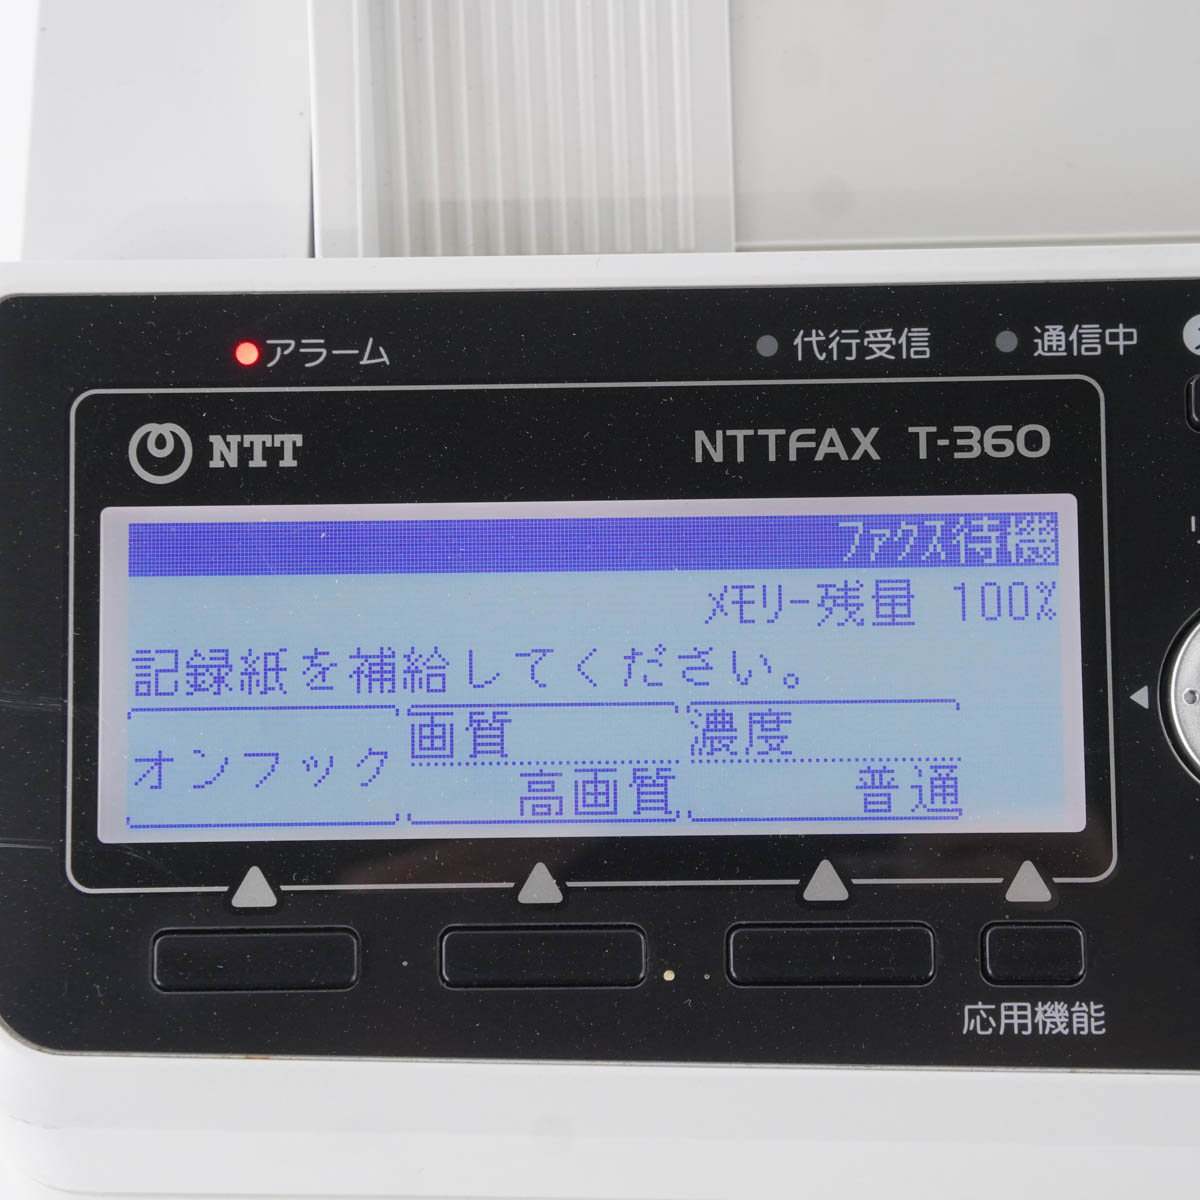 PG]USED 8日保証 印字6471枚 2016年製 NTT T-360 G3-(T360)-FAX NTTFAX 